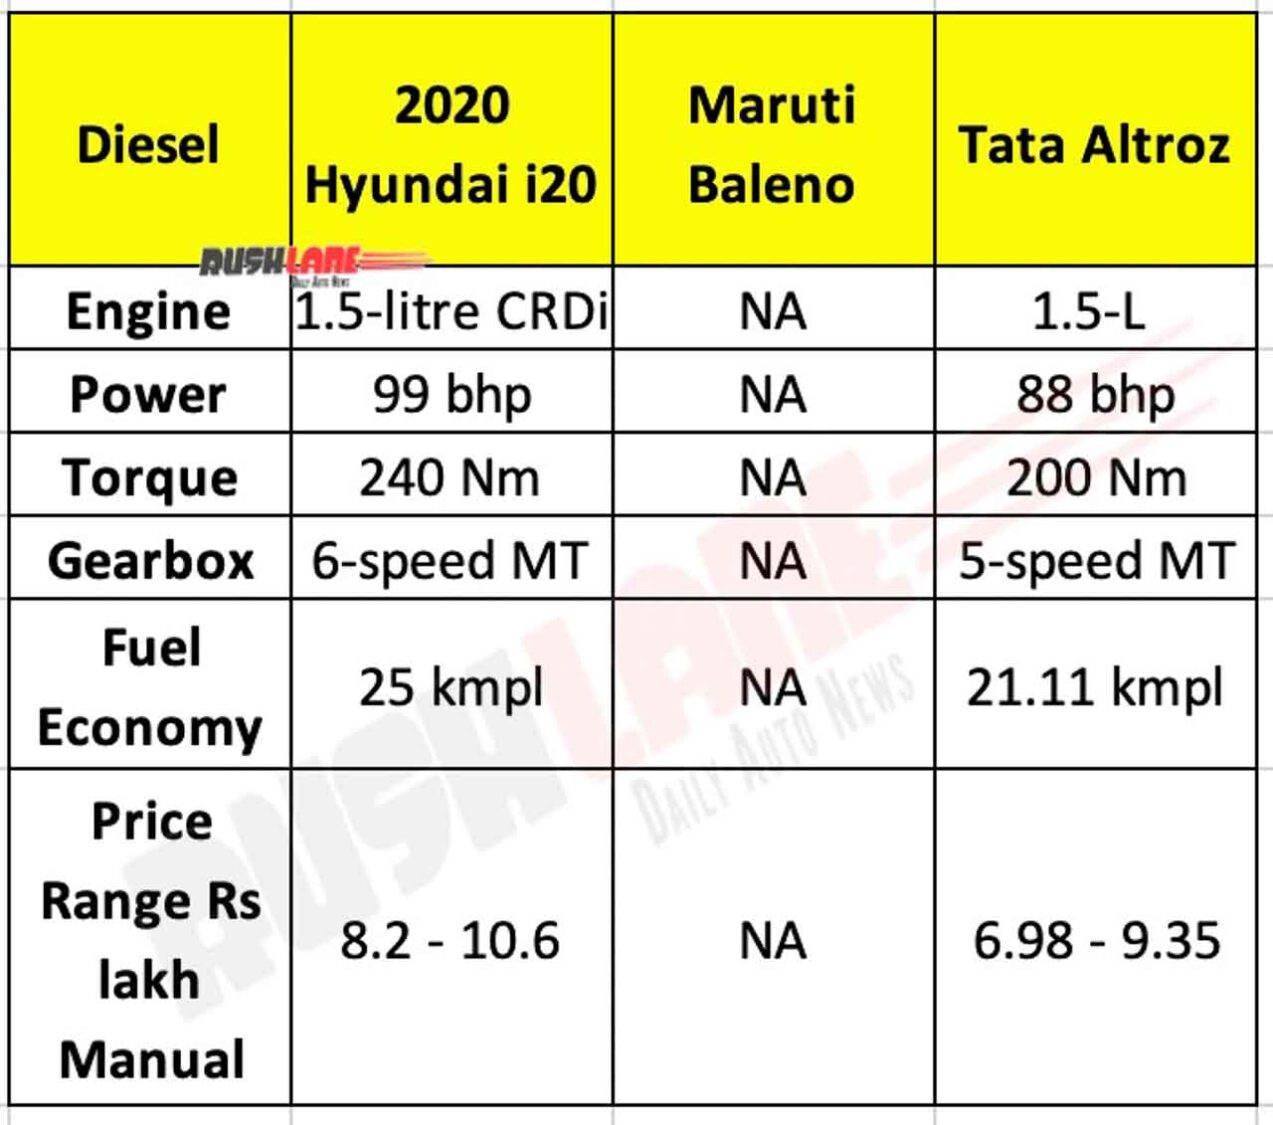 2020 Hyundai i20 Diesel vs Baleno vs Altroz